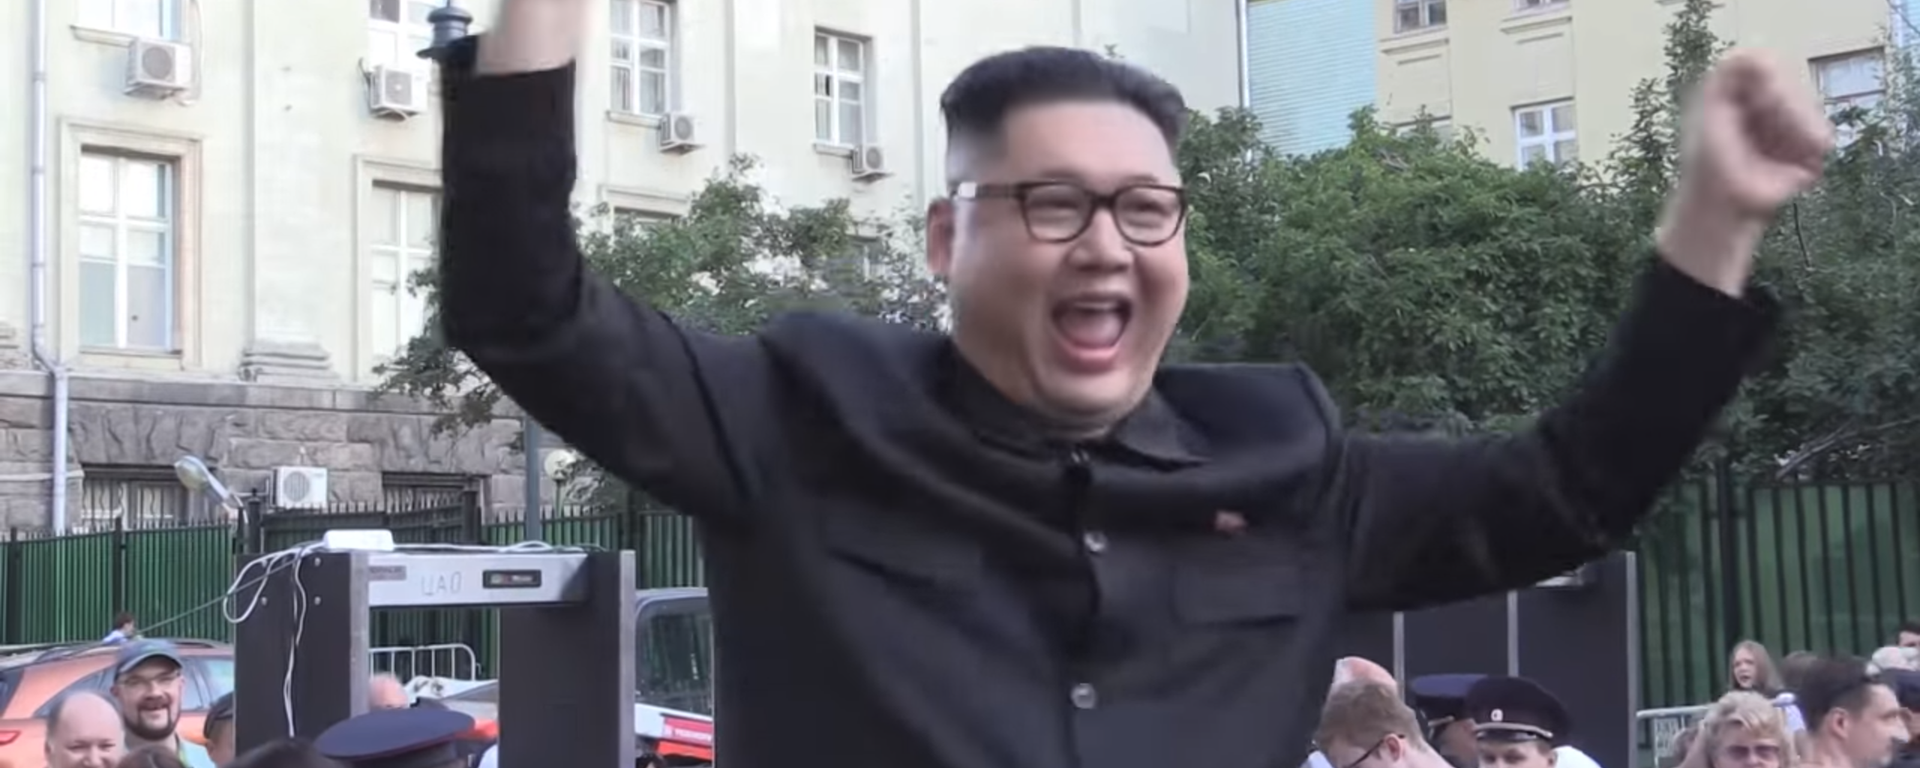 „Vidimo se kroz četiri godine u Severnoj Koreji“: „Kim“ odigrao Kaćušu u Moskvi (video) - Sputnik Srbija, 1920, 01.07.2018